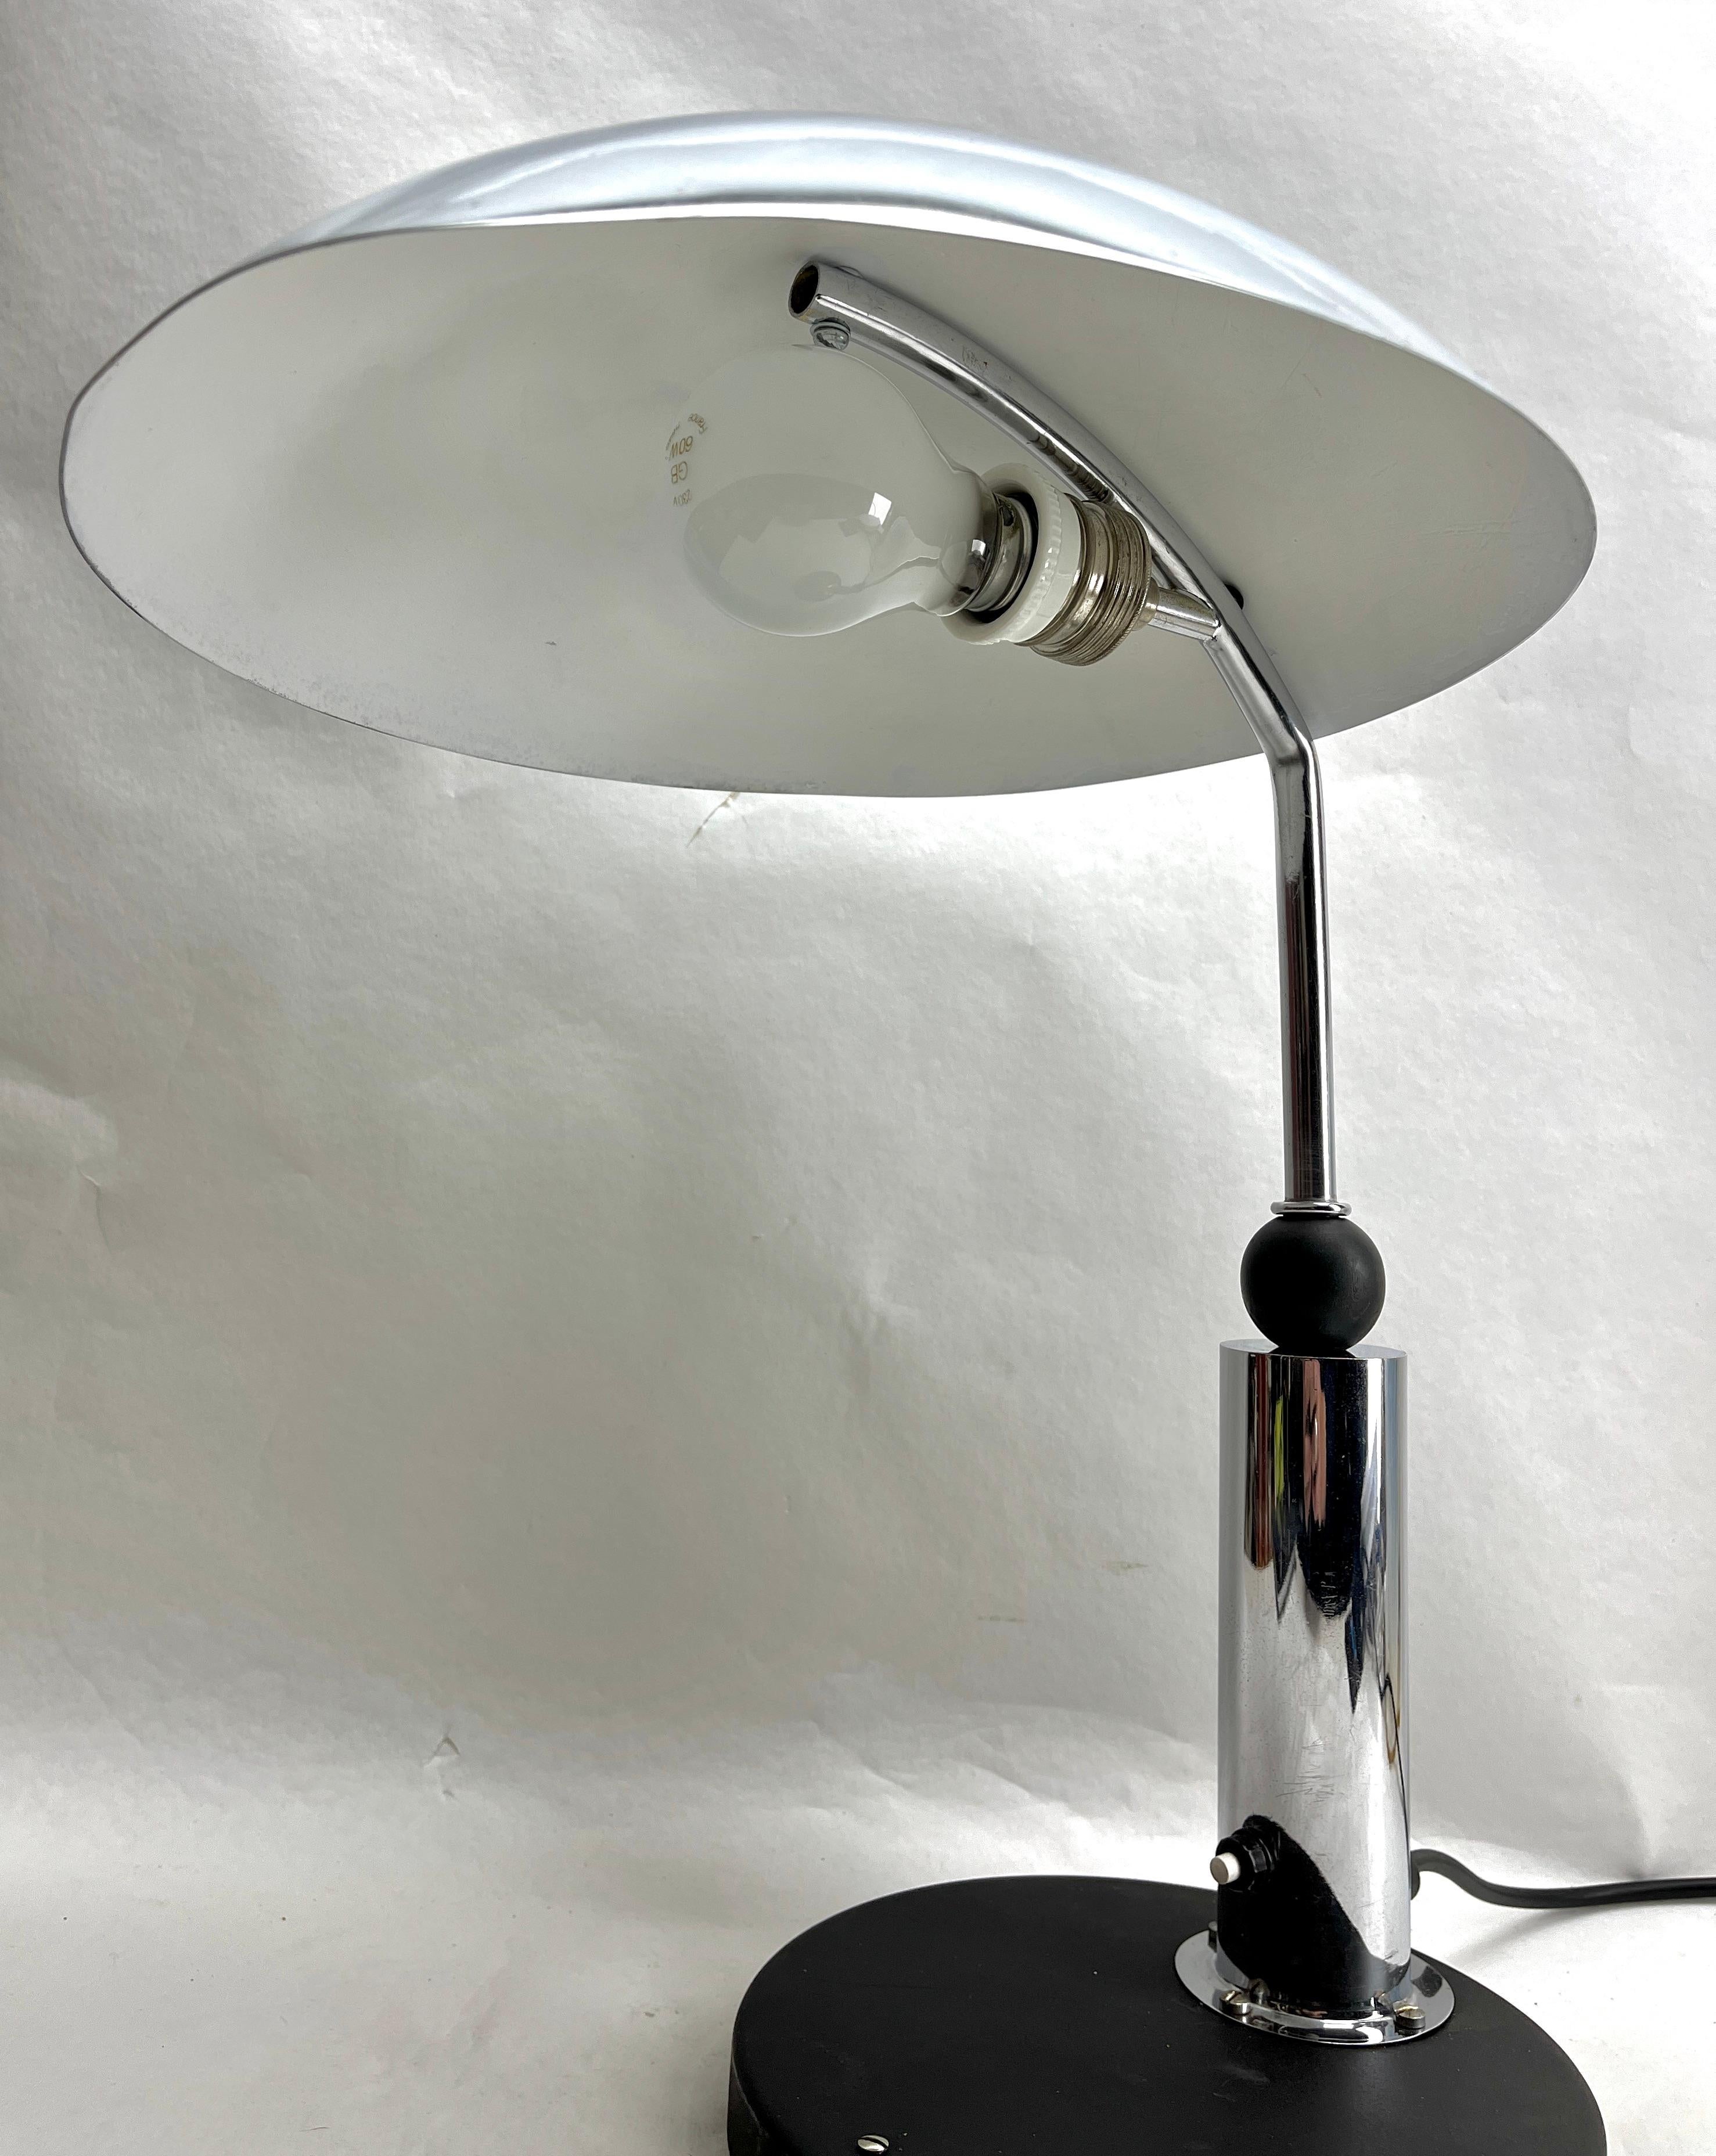 Schreibtischlampe oder Beistelltischlampe KMD (Daalderop) Tiel im Bauhaus-Stil 1930er Jahre
Diese originalgetreue Aerly Century Desk Lamp wurde von KMD entworfen, 
Schreibtisch oder Beistelltisch Lampe Tiel Niederlande
Bauhaus-Stil, mit verchromter